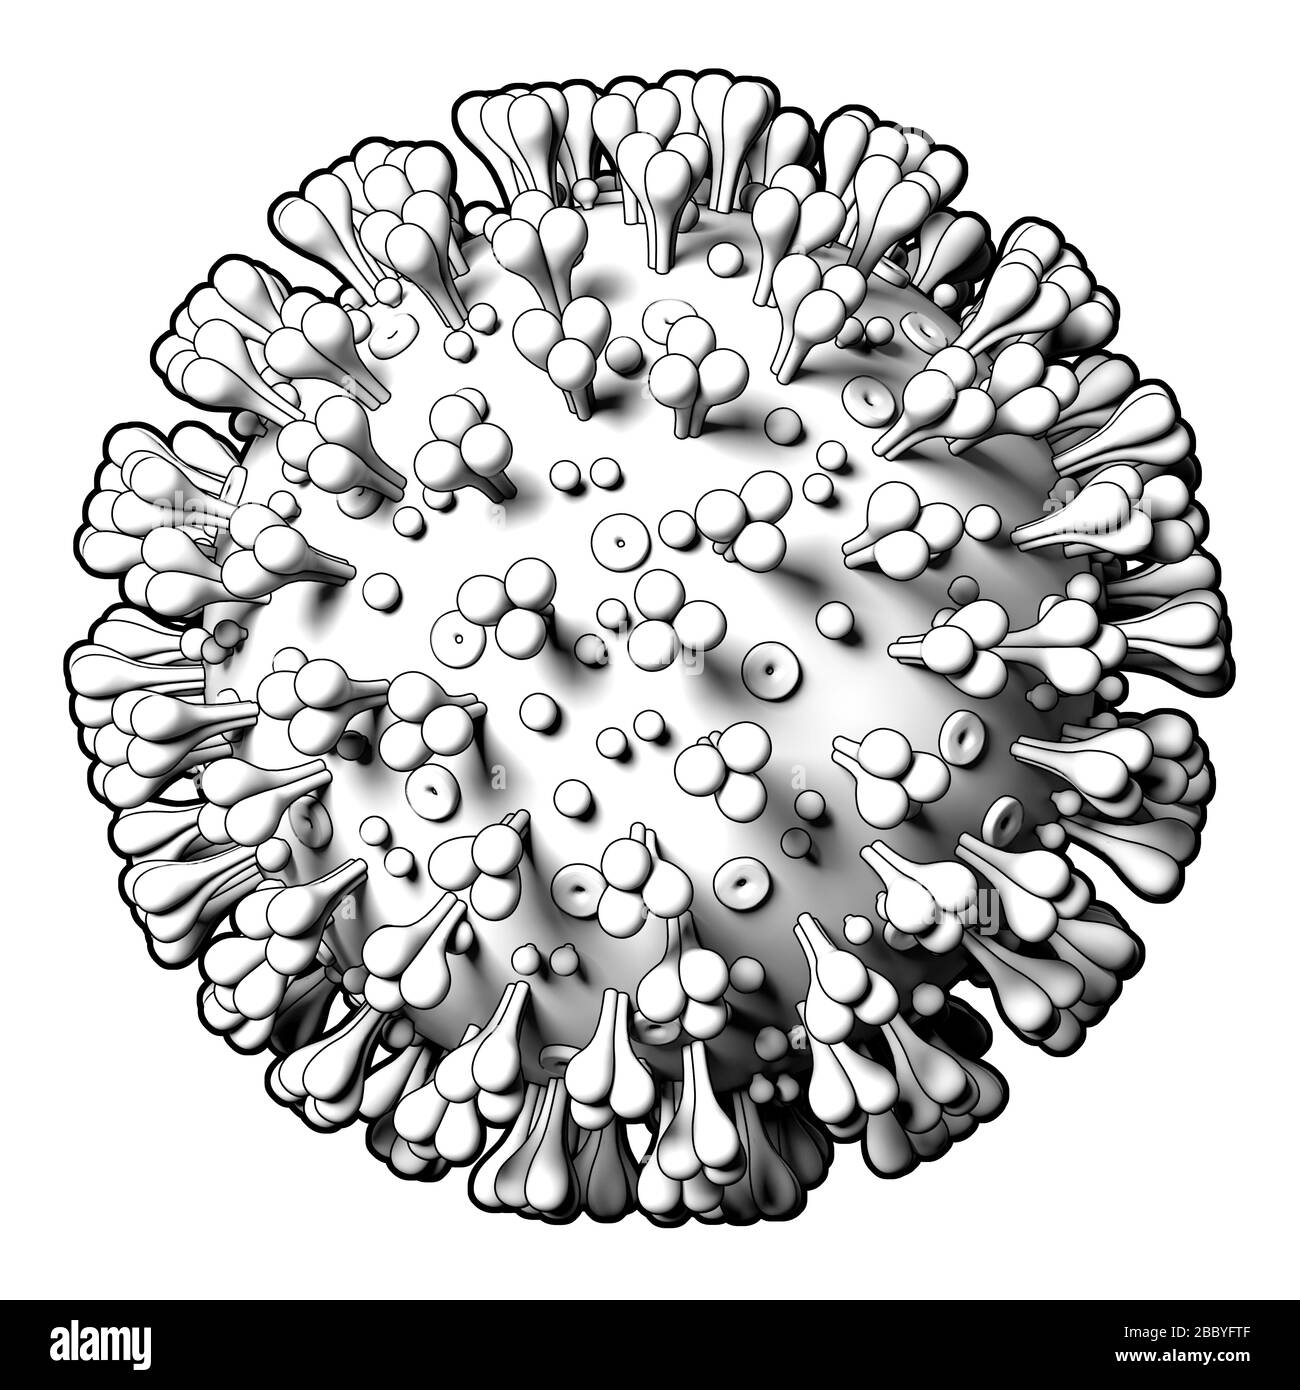 Modello del virus Coronavirus Covid19 su sfondo bianco. Modello grafico stilizzato, diagramma. Primo piano Foto Stock